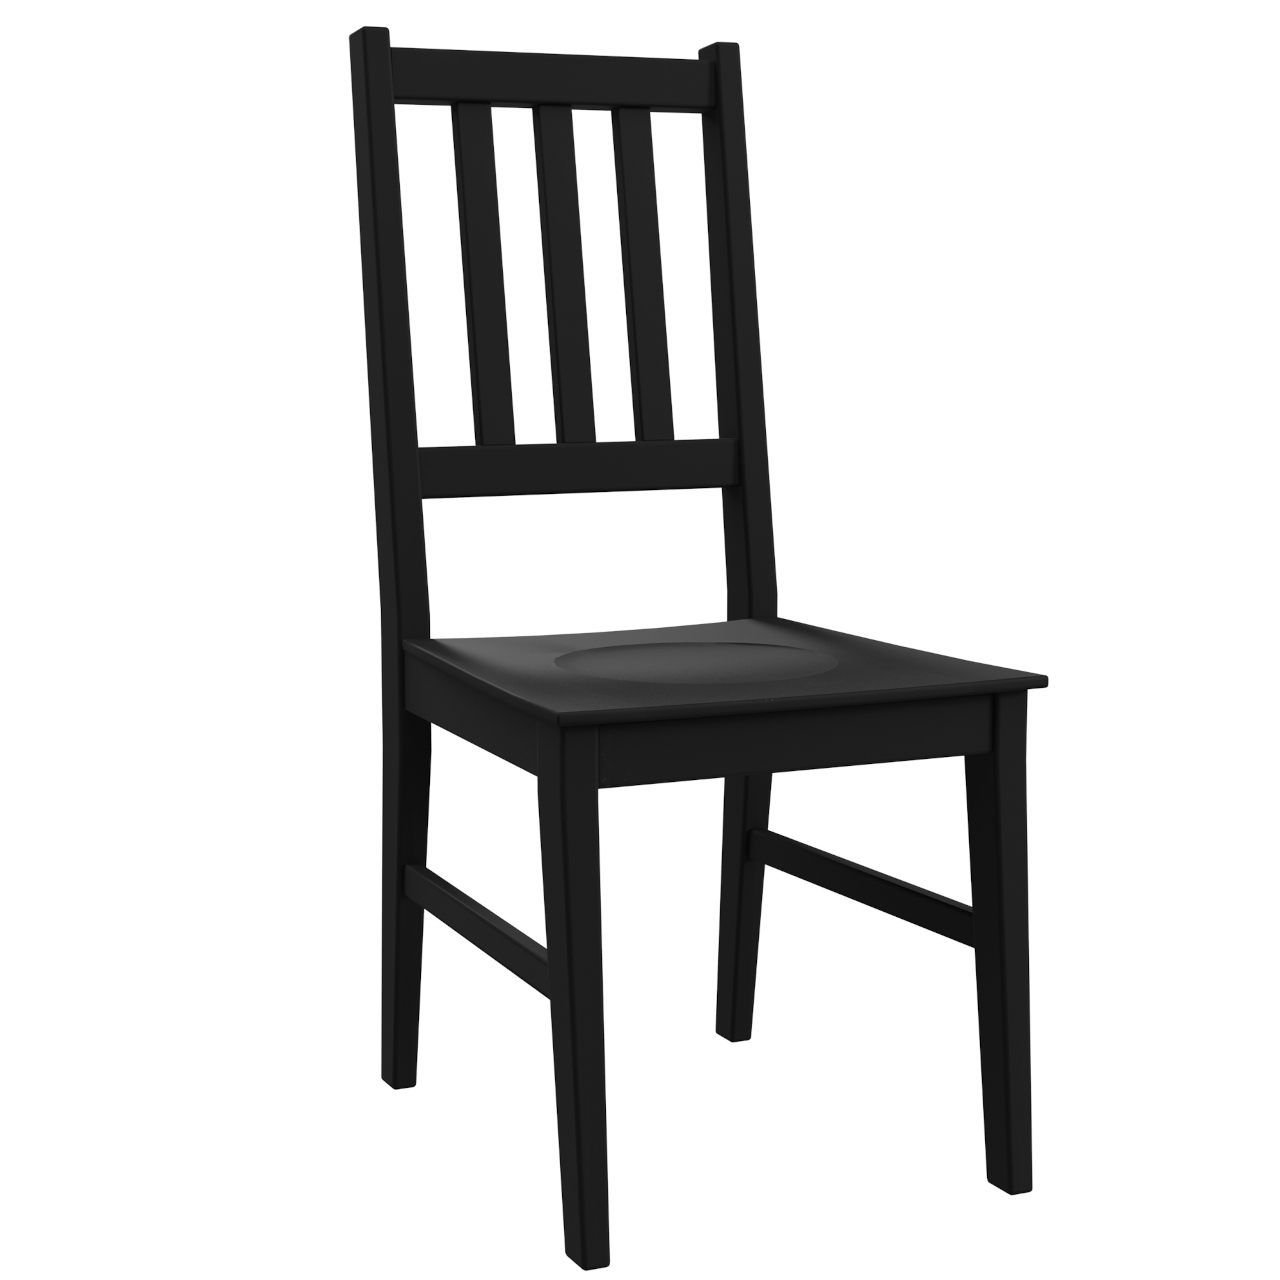 Chair BOS 4D black